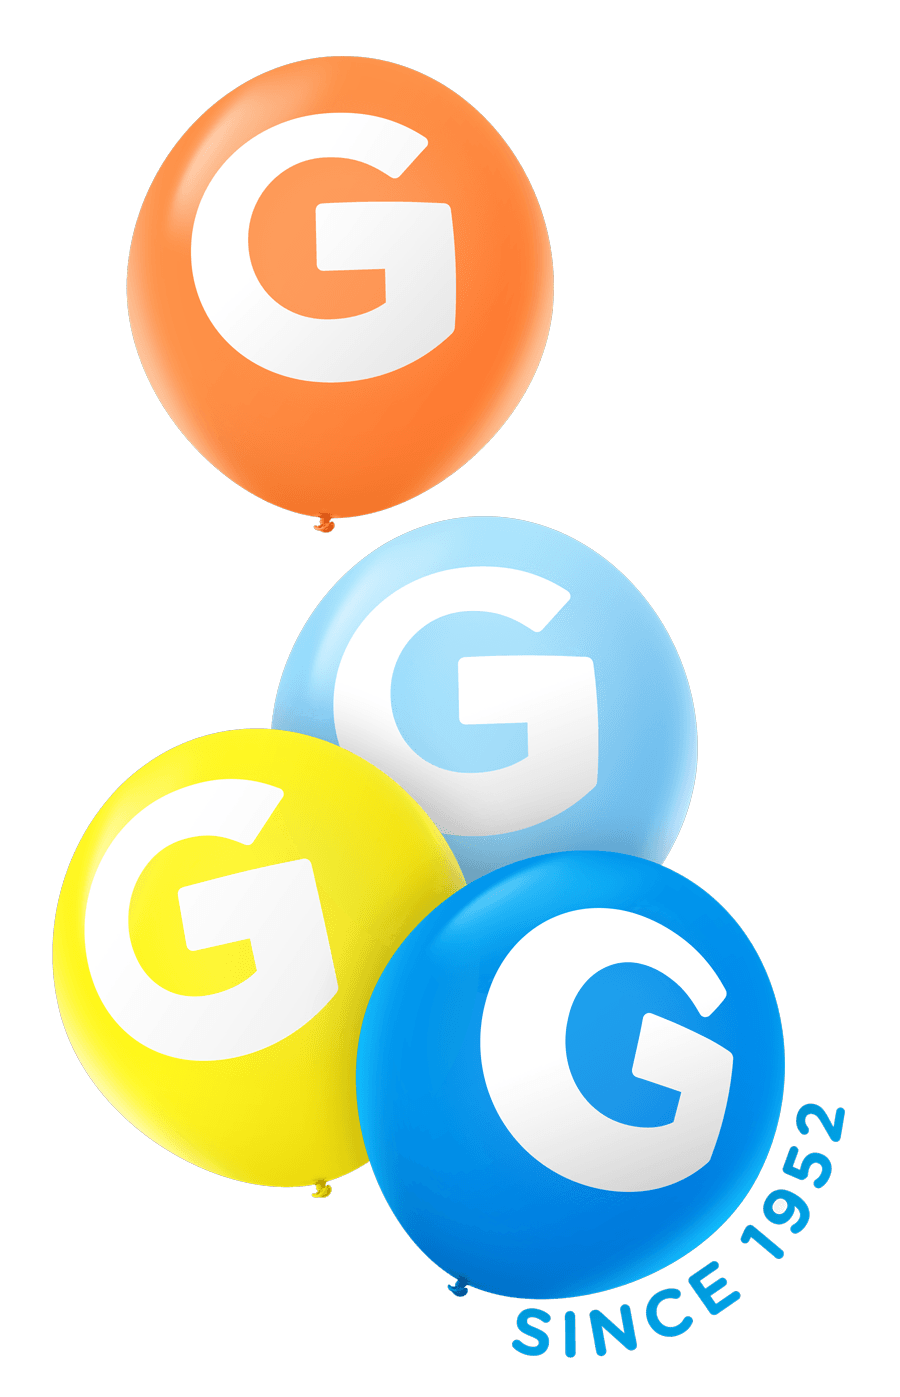 Granger Logo - Granger – Lifting Brands Up